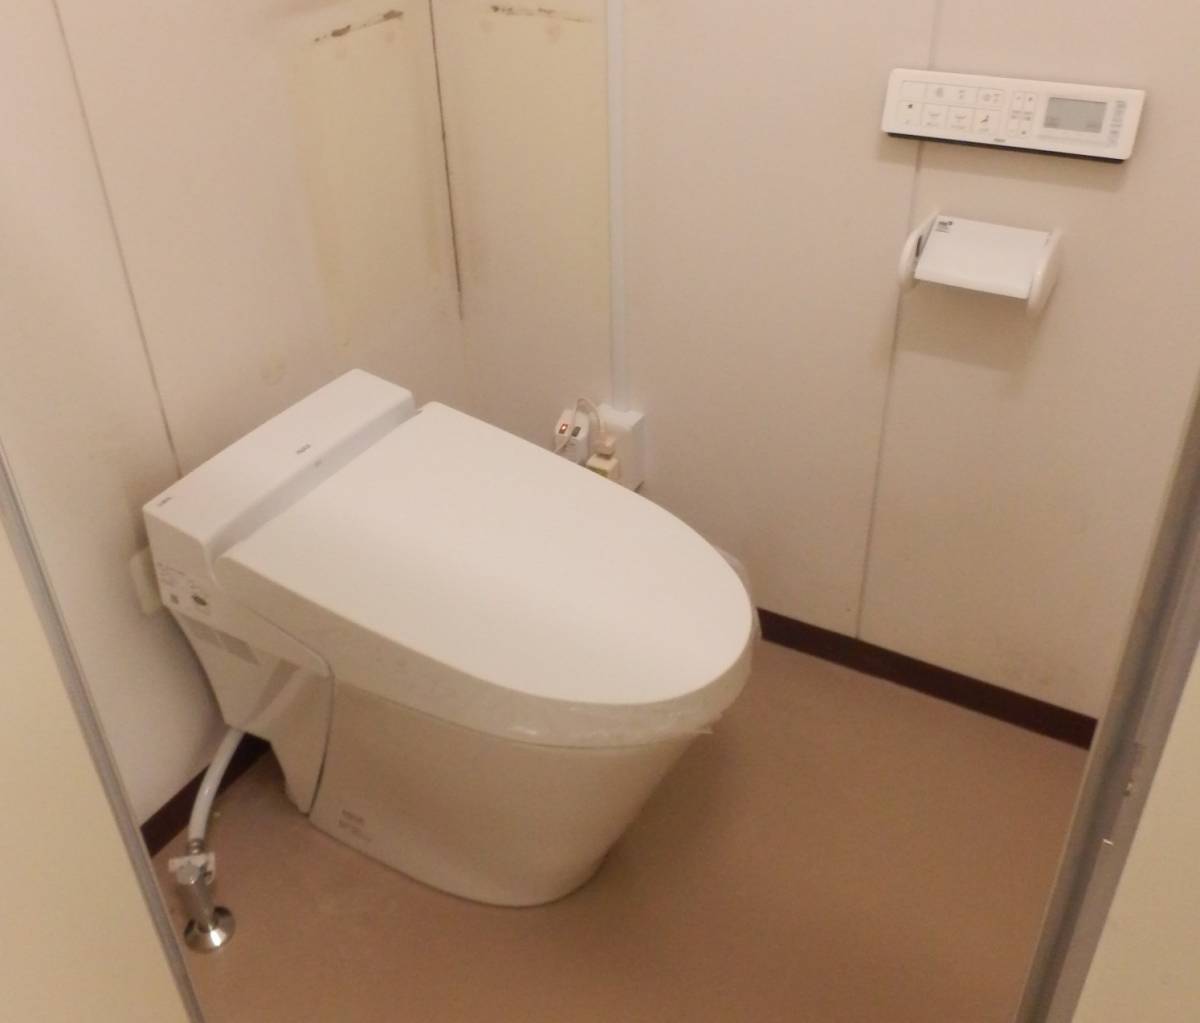 鎌田トーヨー住器のトイレ取替工事の施工後の写真1